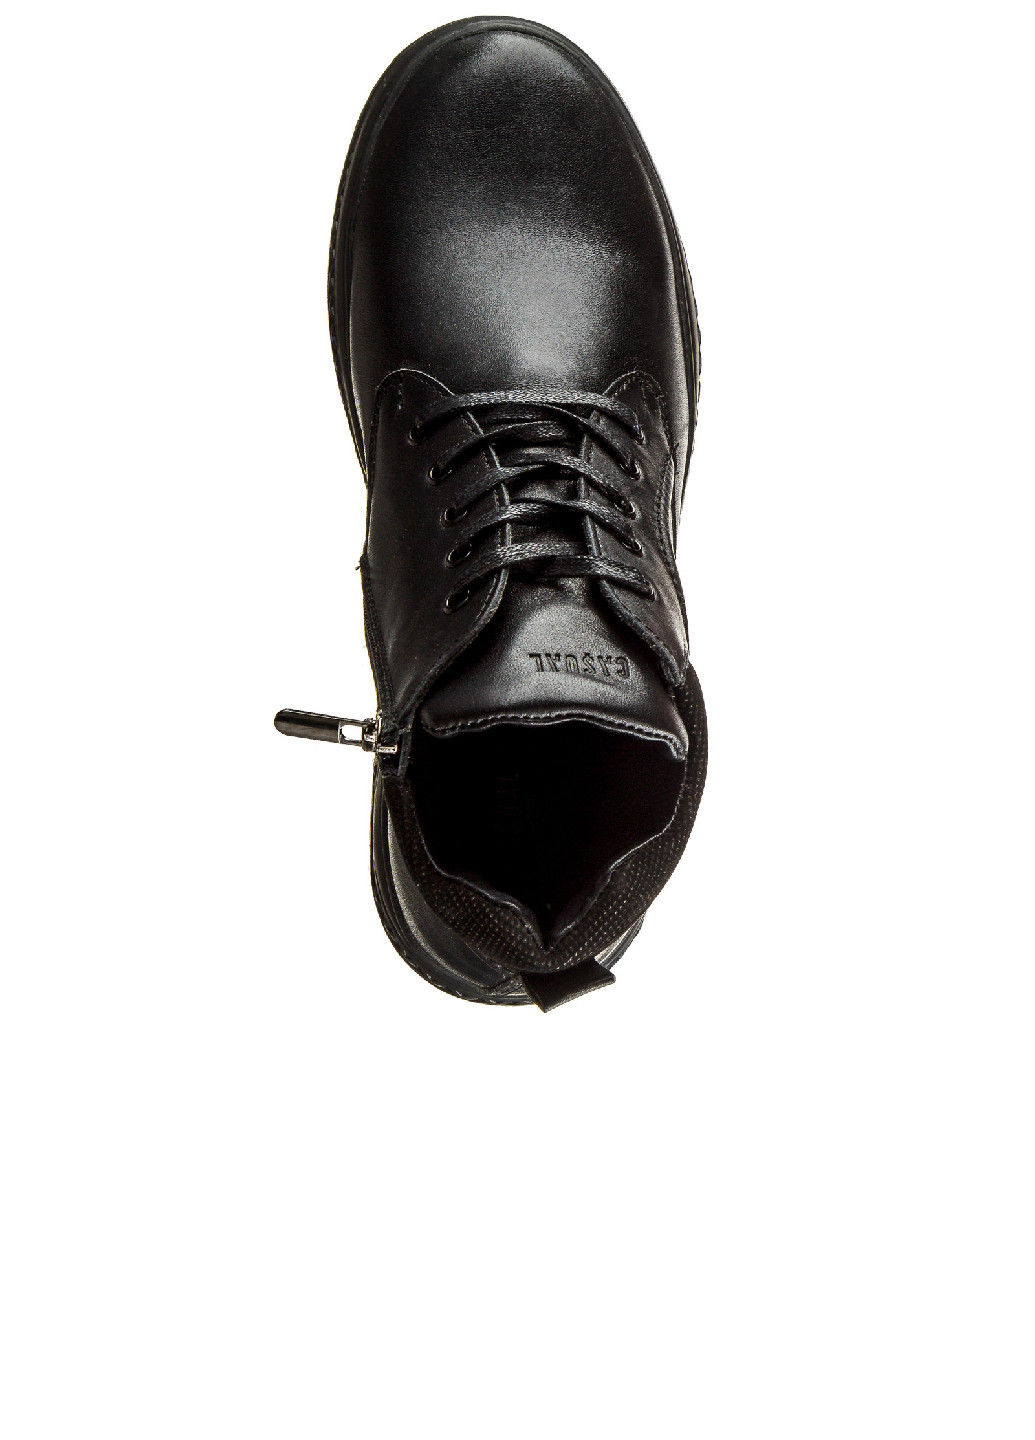 Черные осенние ботинки мужские утепленные Casual